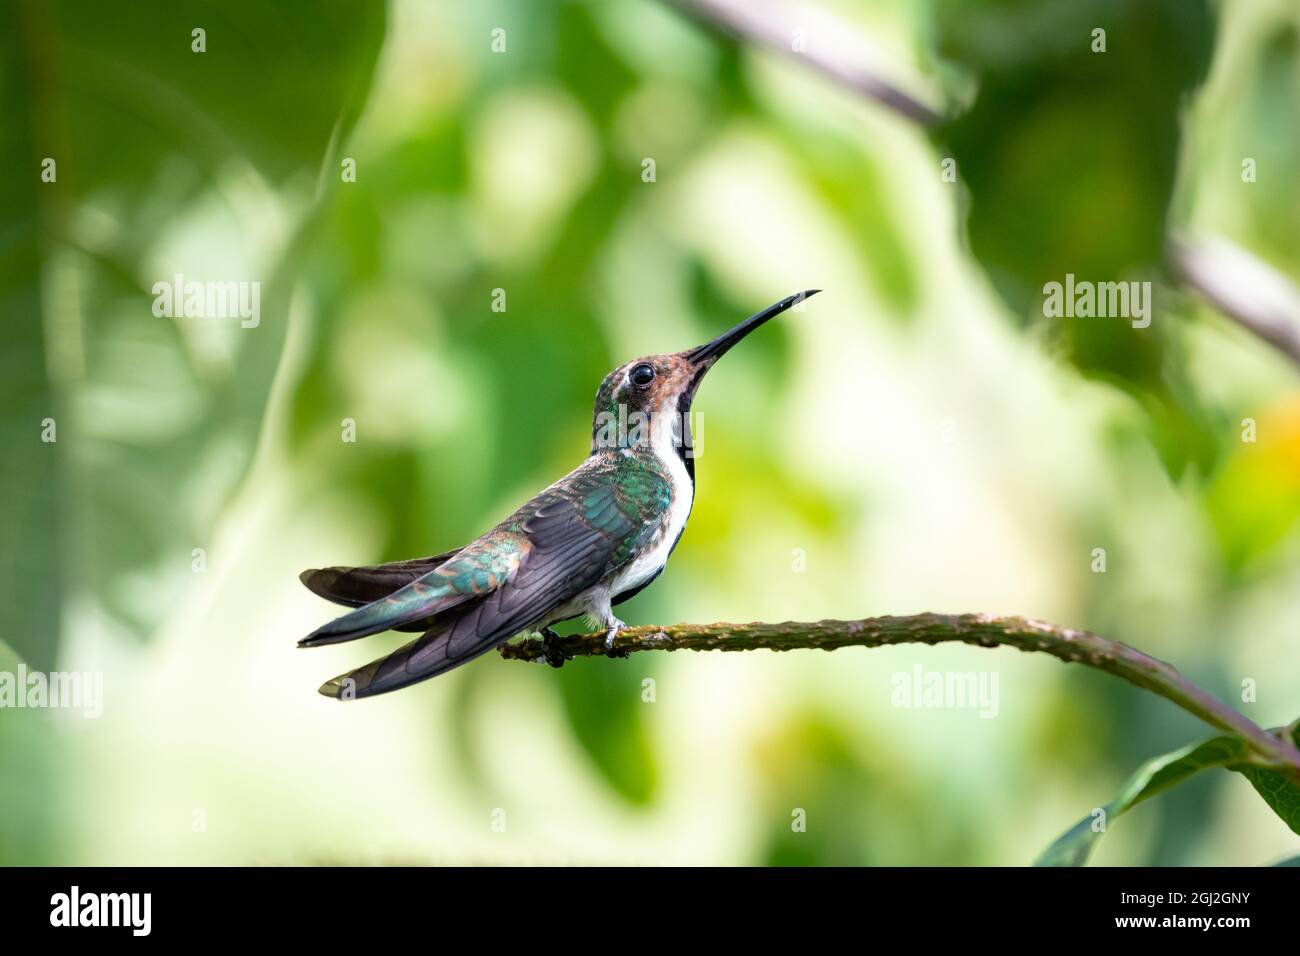 Una joven hembra colibrí de Mango de garganta negra (Anthracothorax nigricollis) descansando sobre una perca con luz solar que viene a través de las hojas. Foto de stock